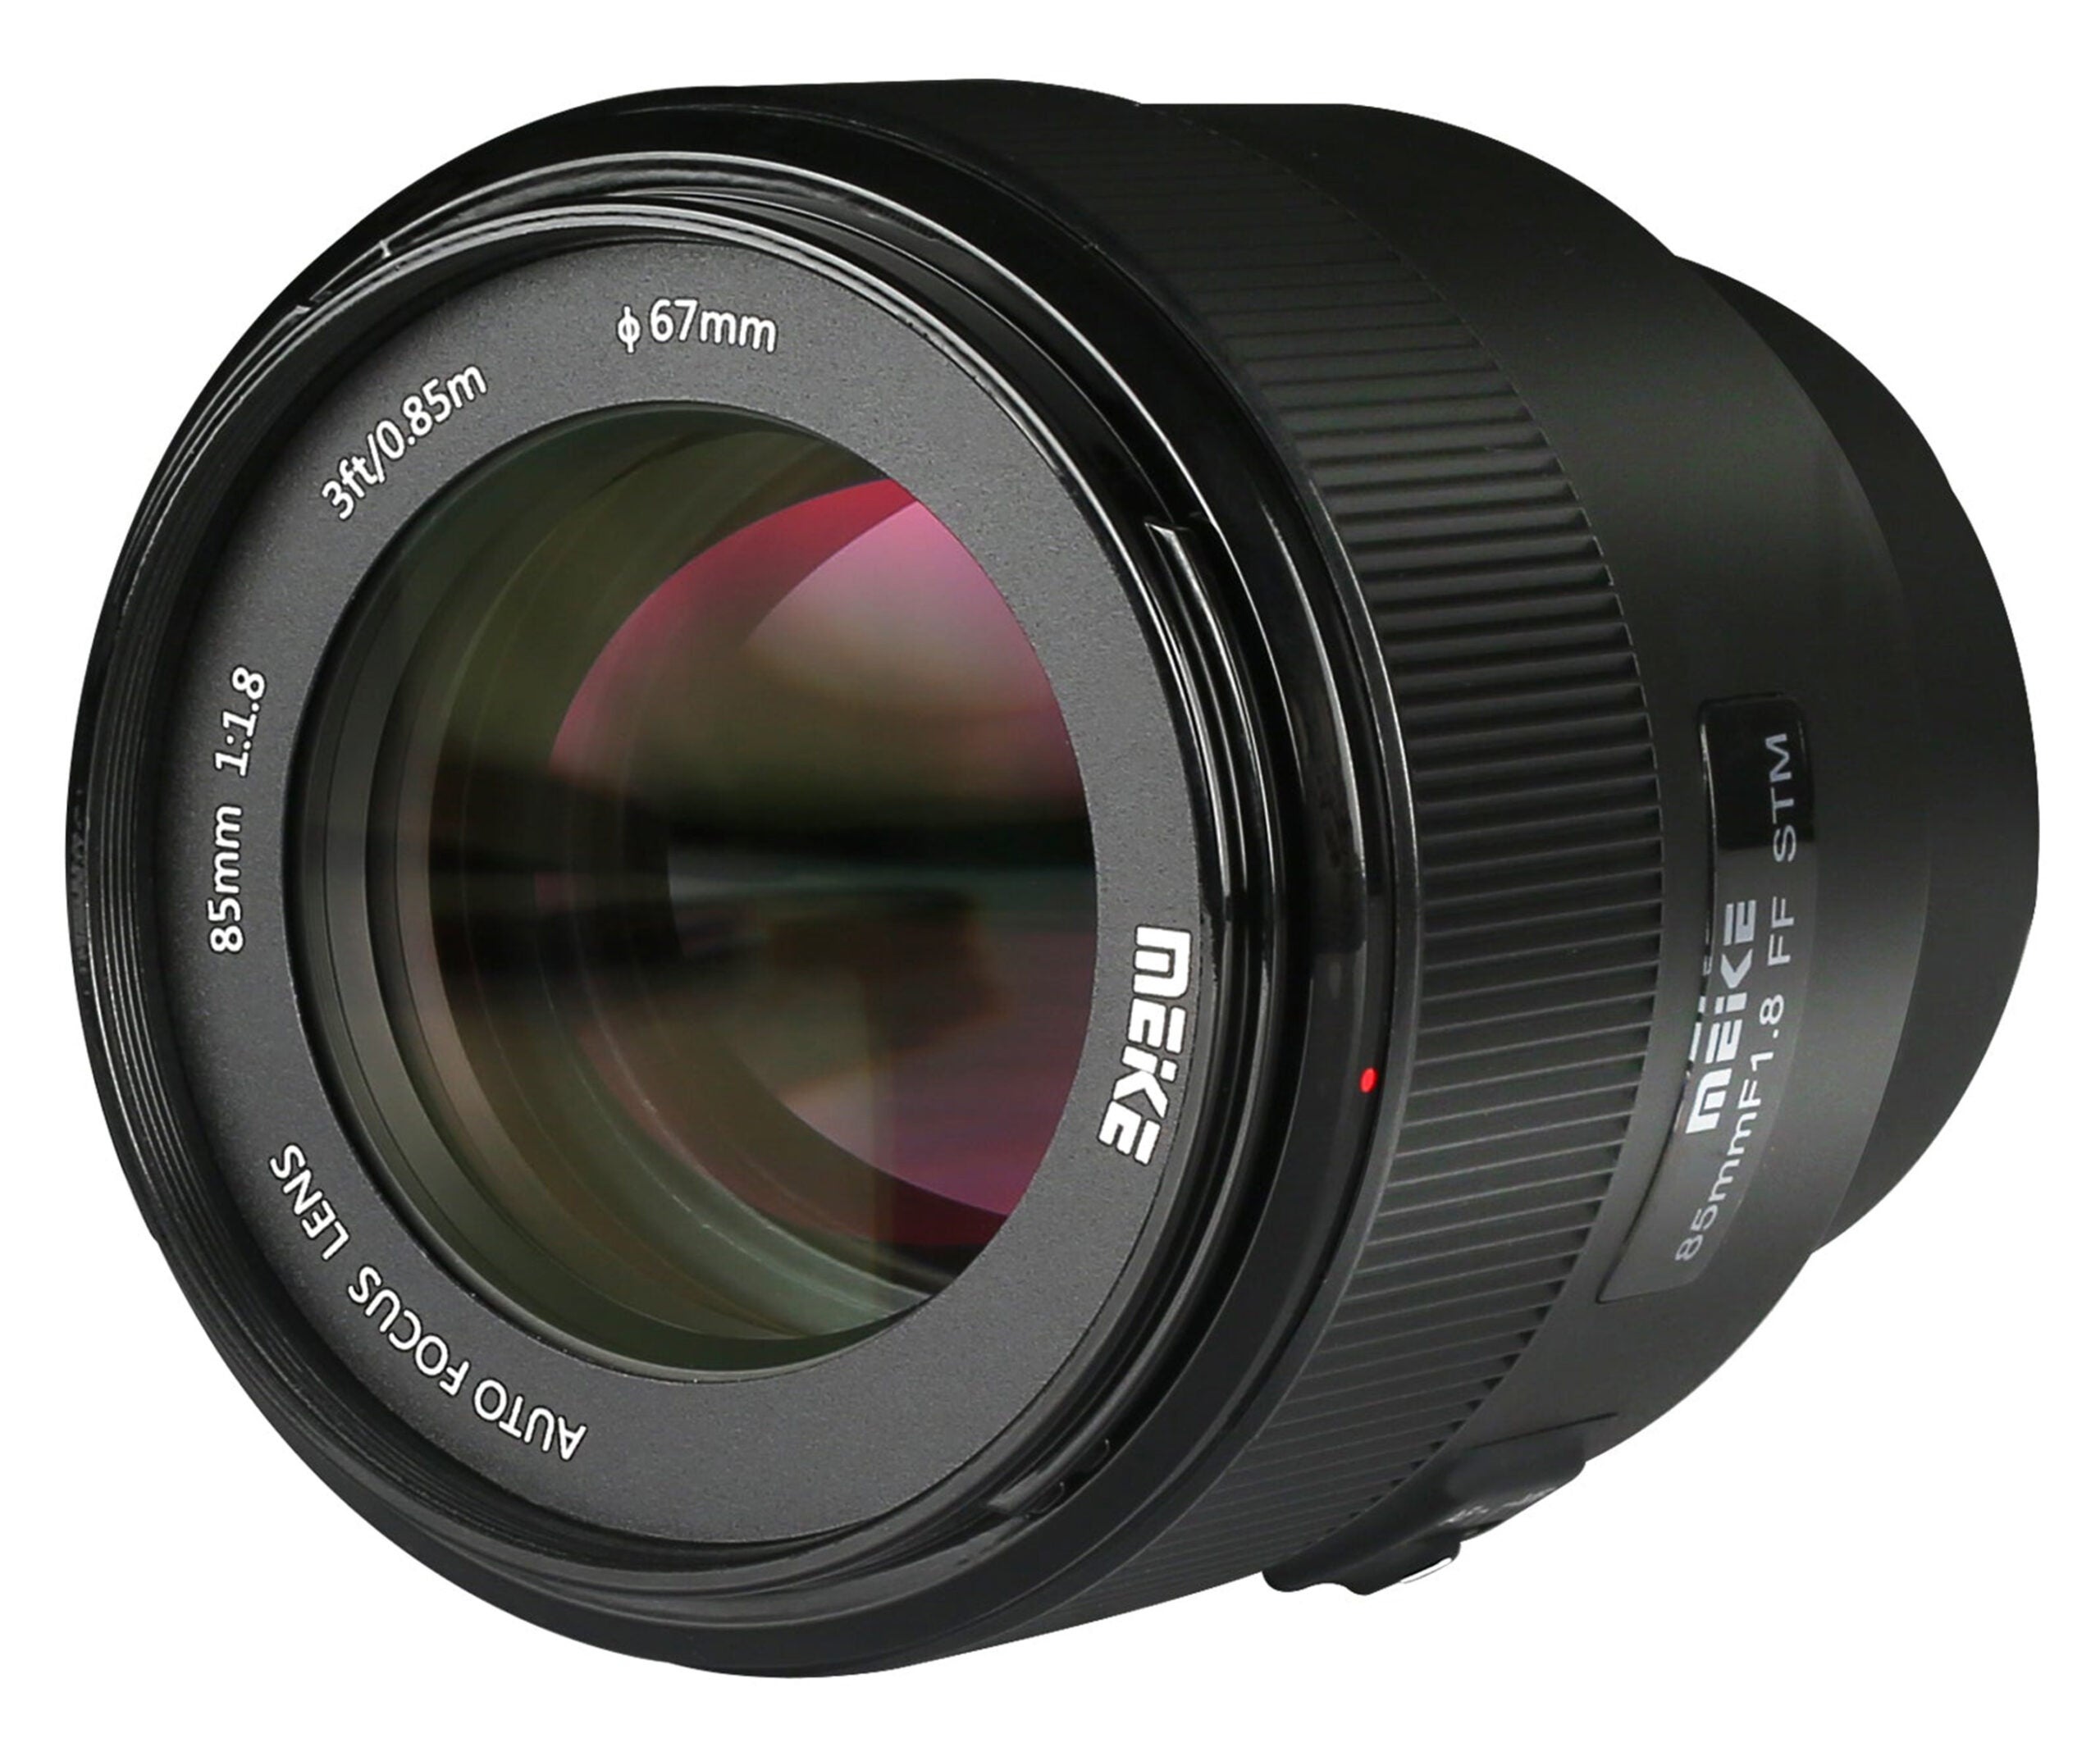 The new Meike 85mm f/1.8 lens for Sony Full-frame E-mount